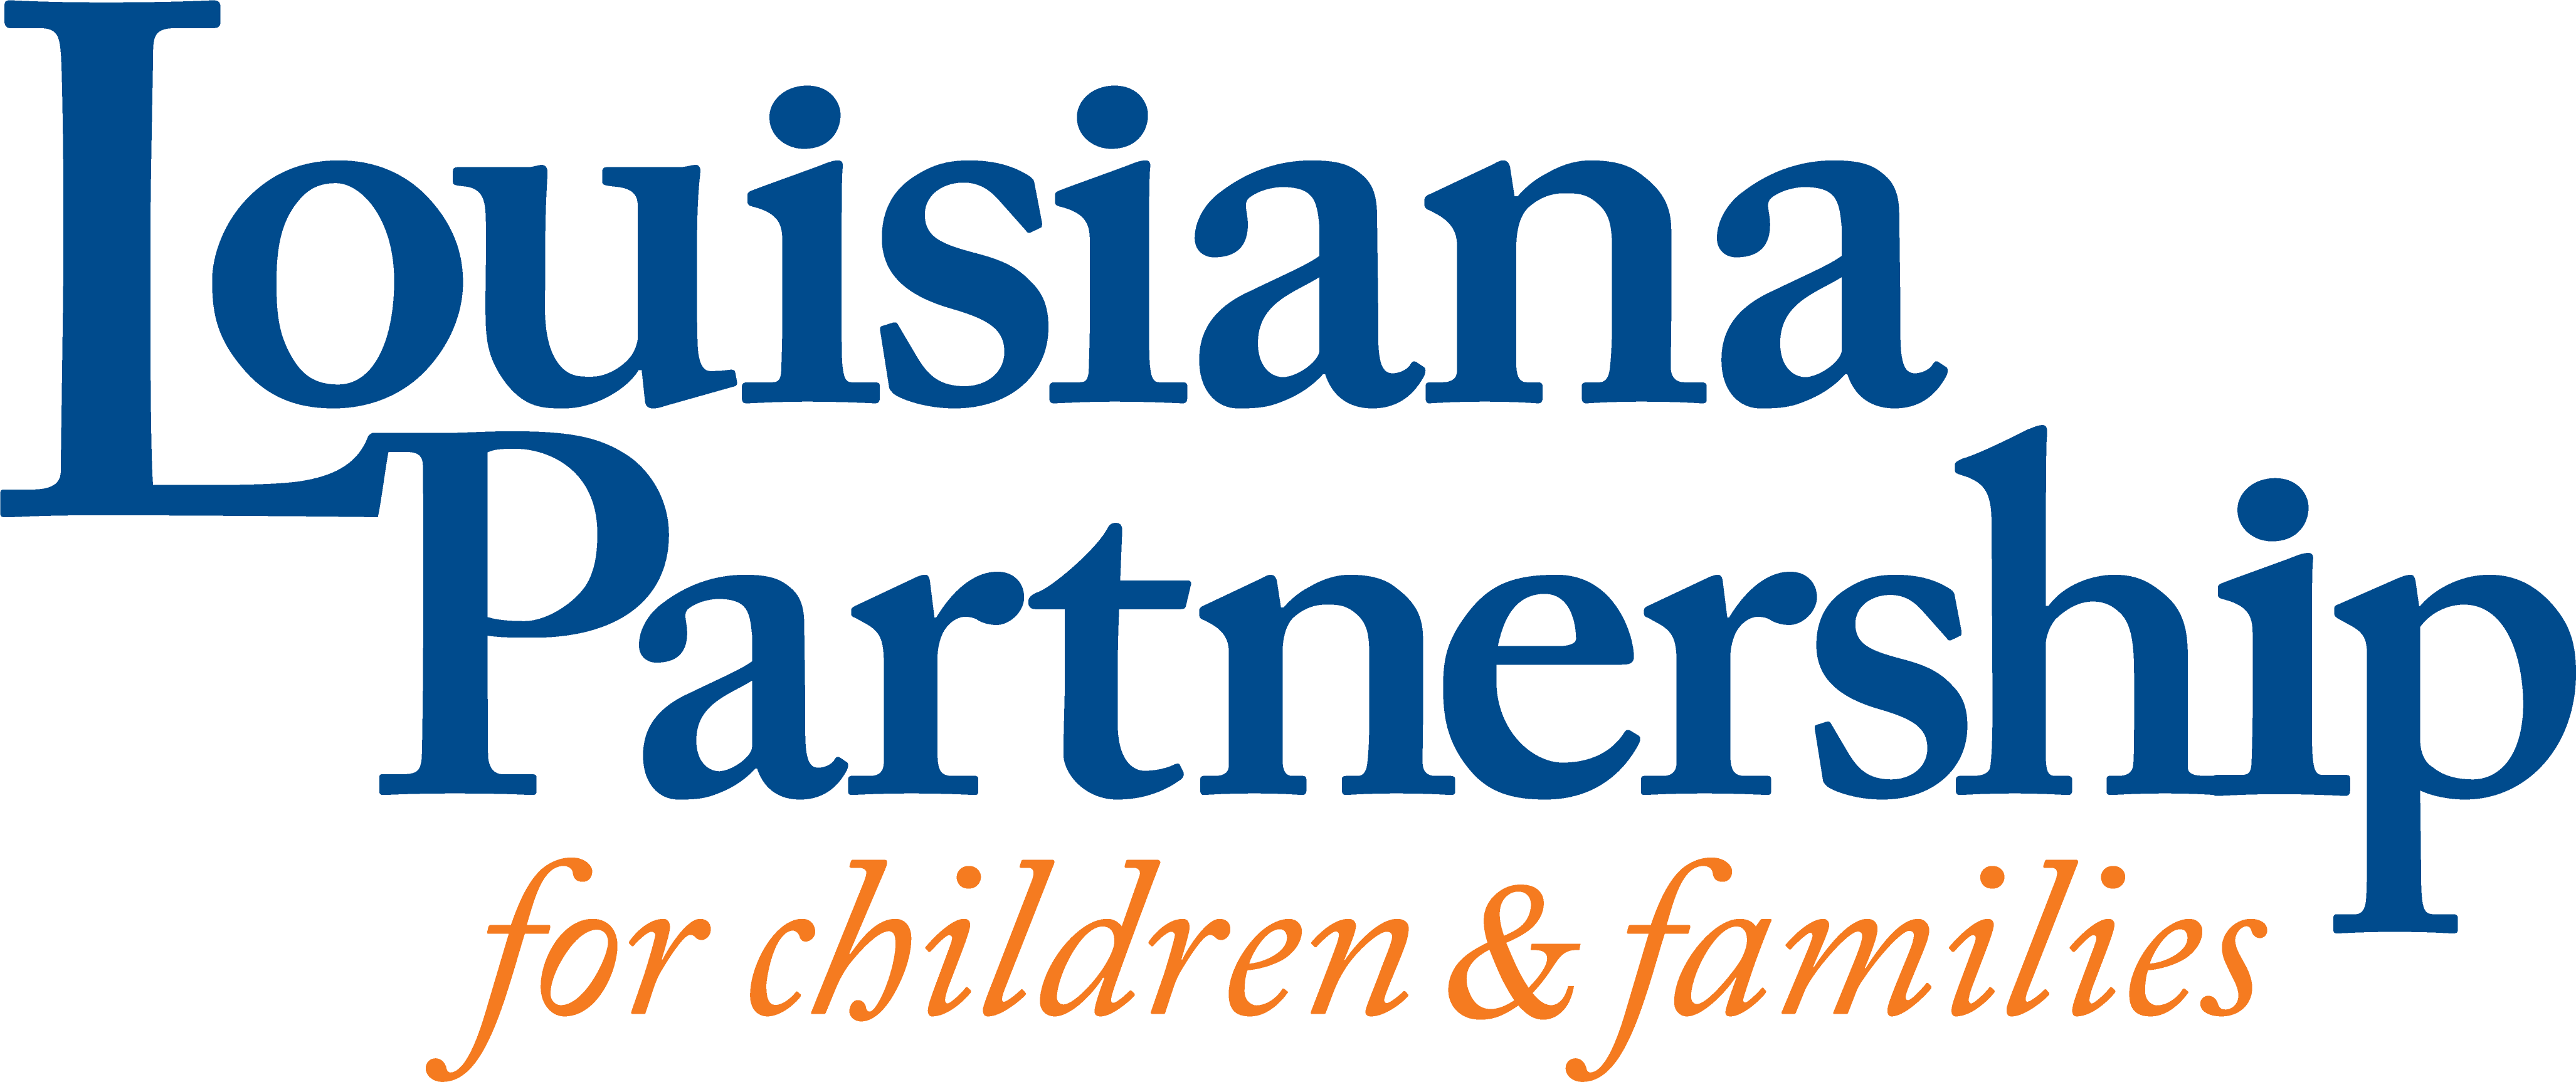 Louisiana Partnership logo